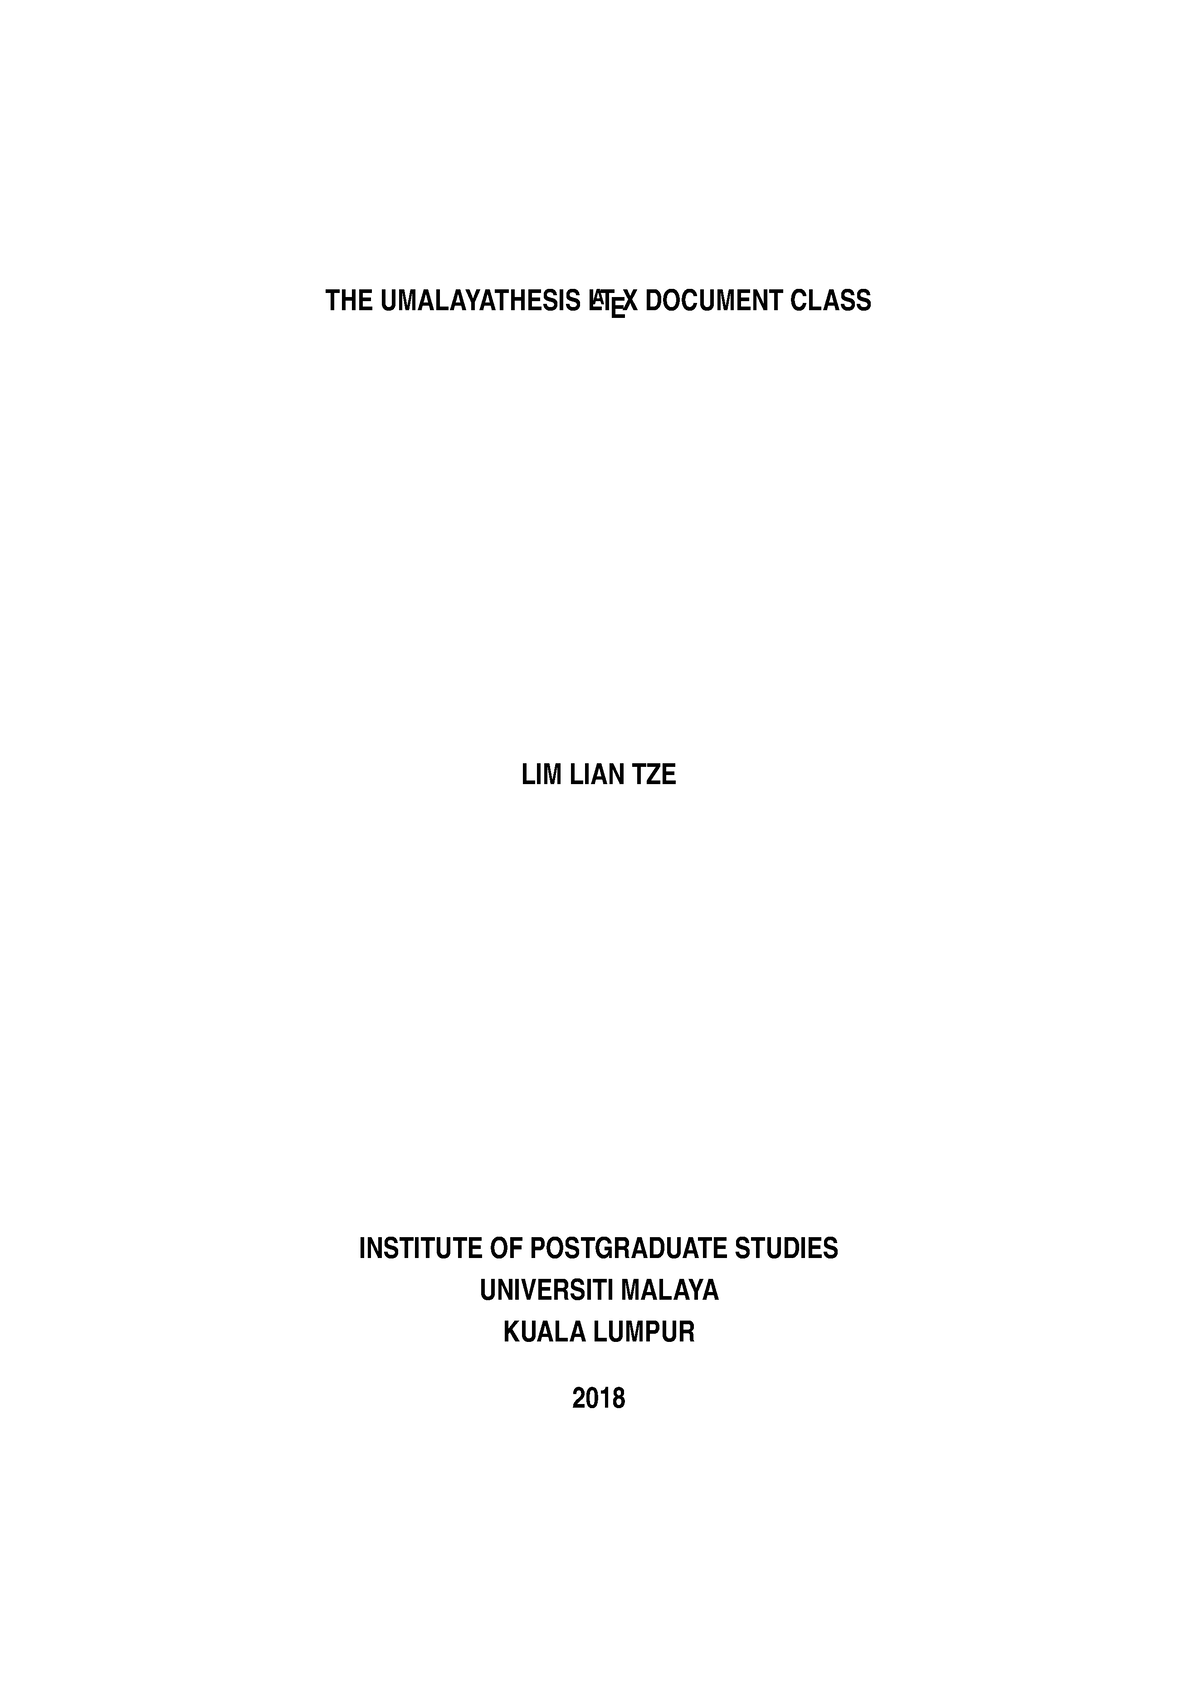 university malaya thesis format